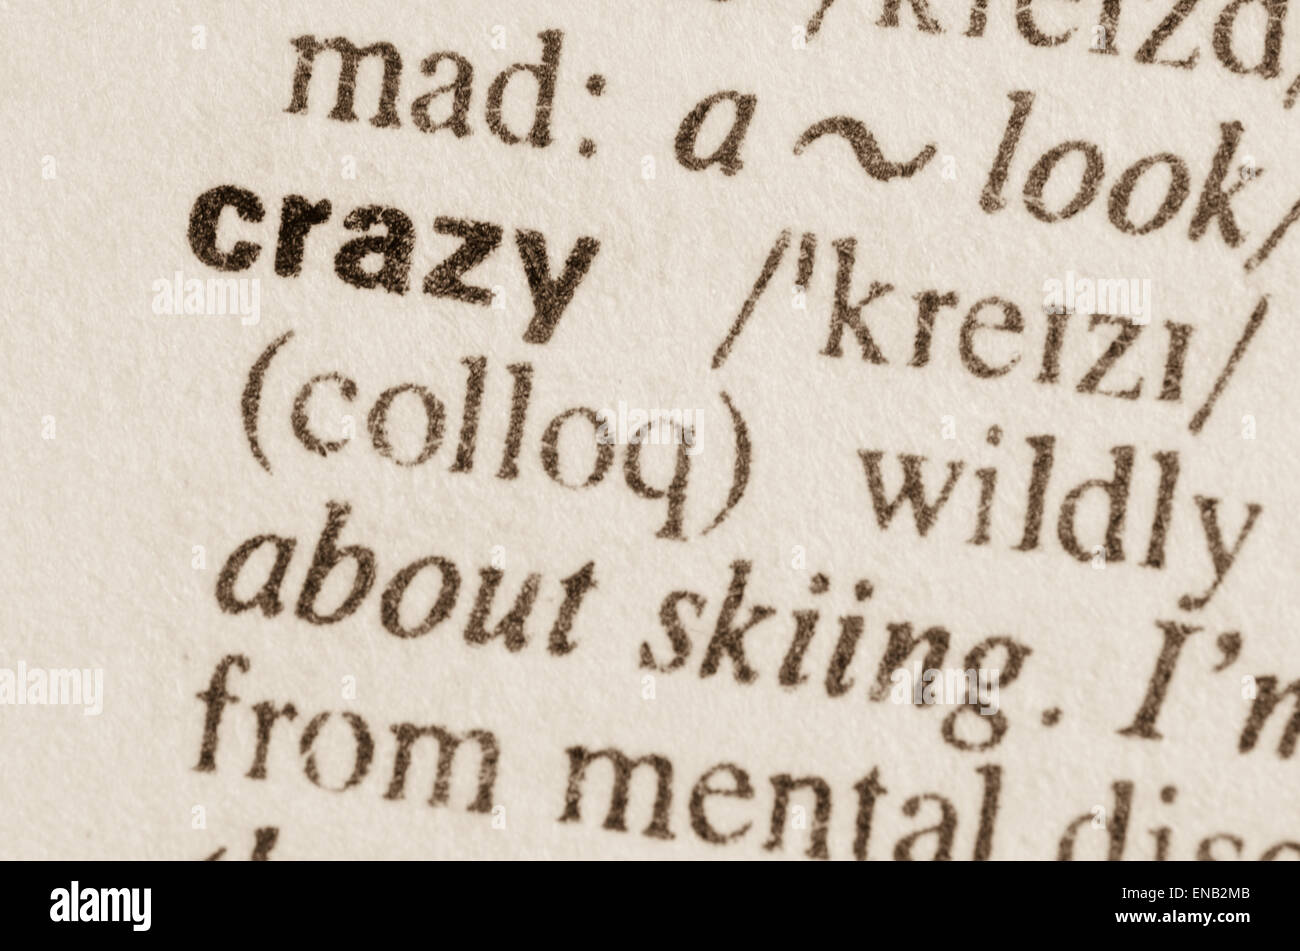 Definición de la palabra loco en el diccionario. Foto de stock